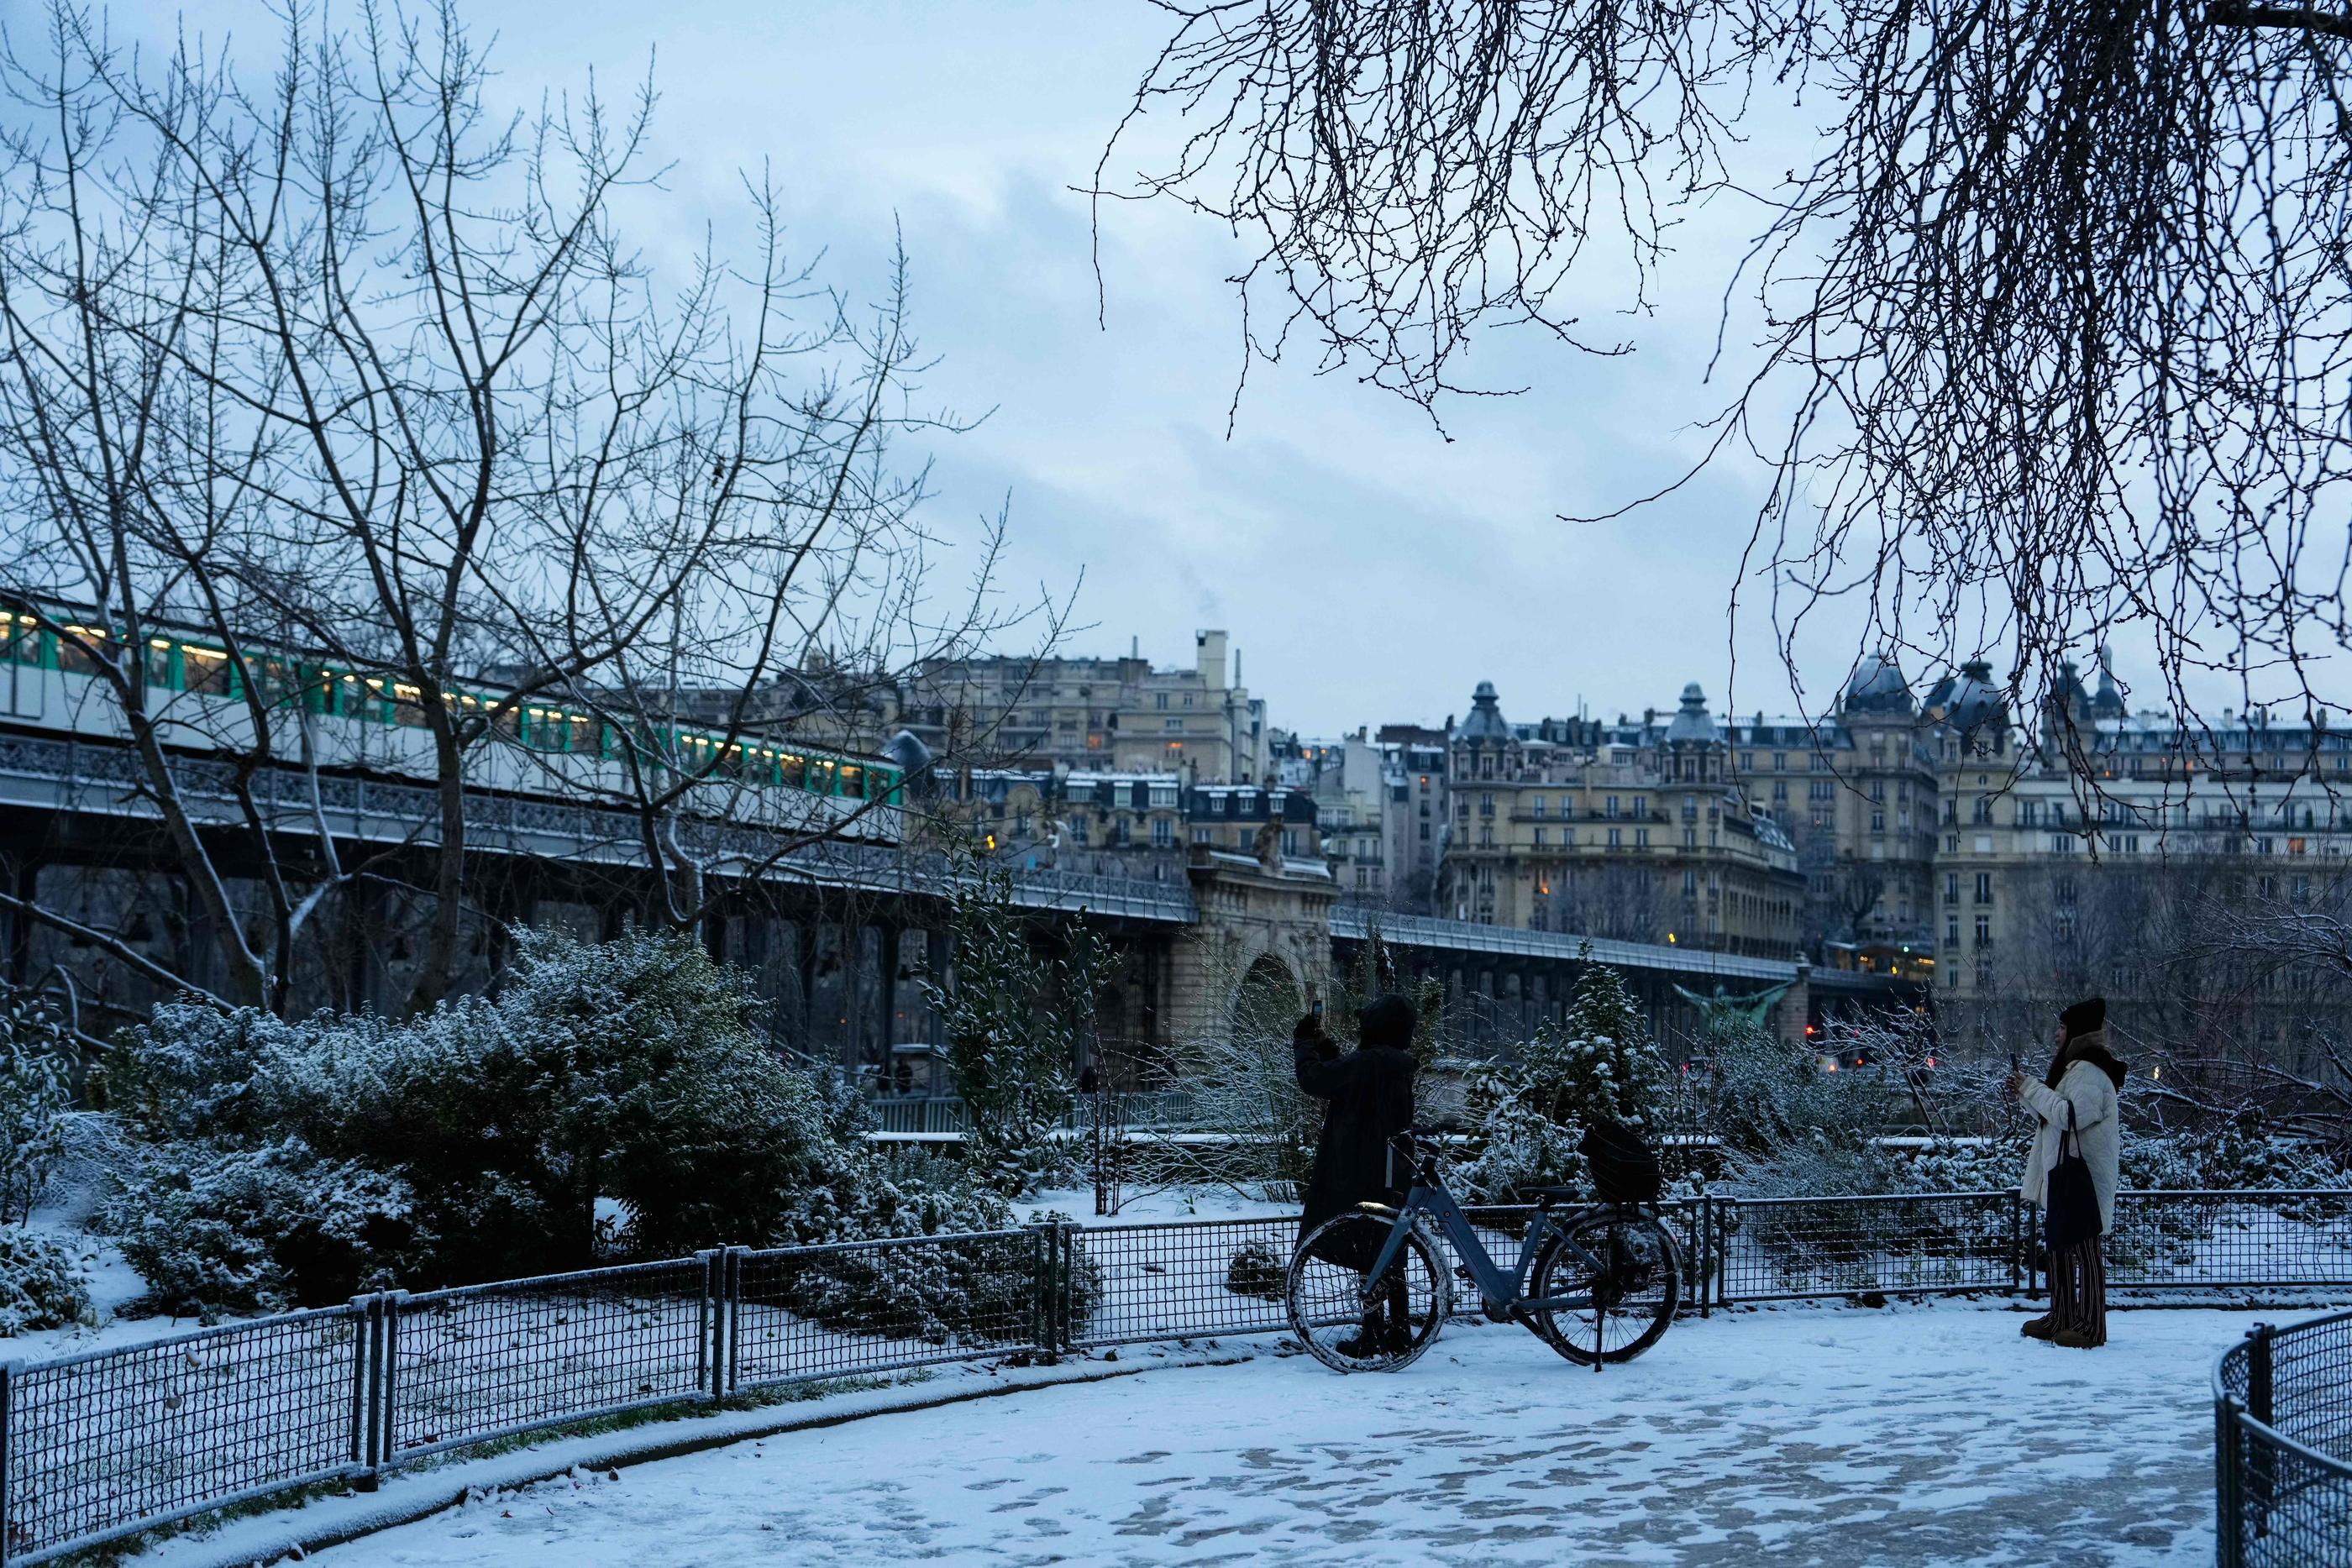 A Paris, ce jeudi, une fine couche de neige couvre les trottoirs, comme ici du côté du pont de Bir-Hakeim. AFP/Dimitar Dilkoff